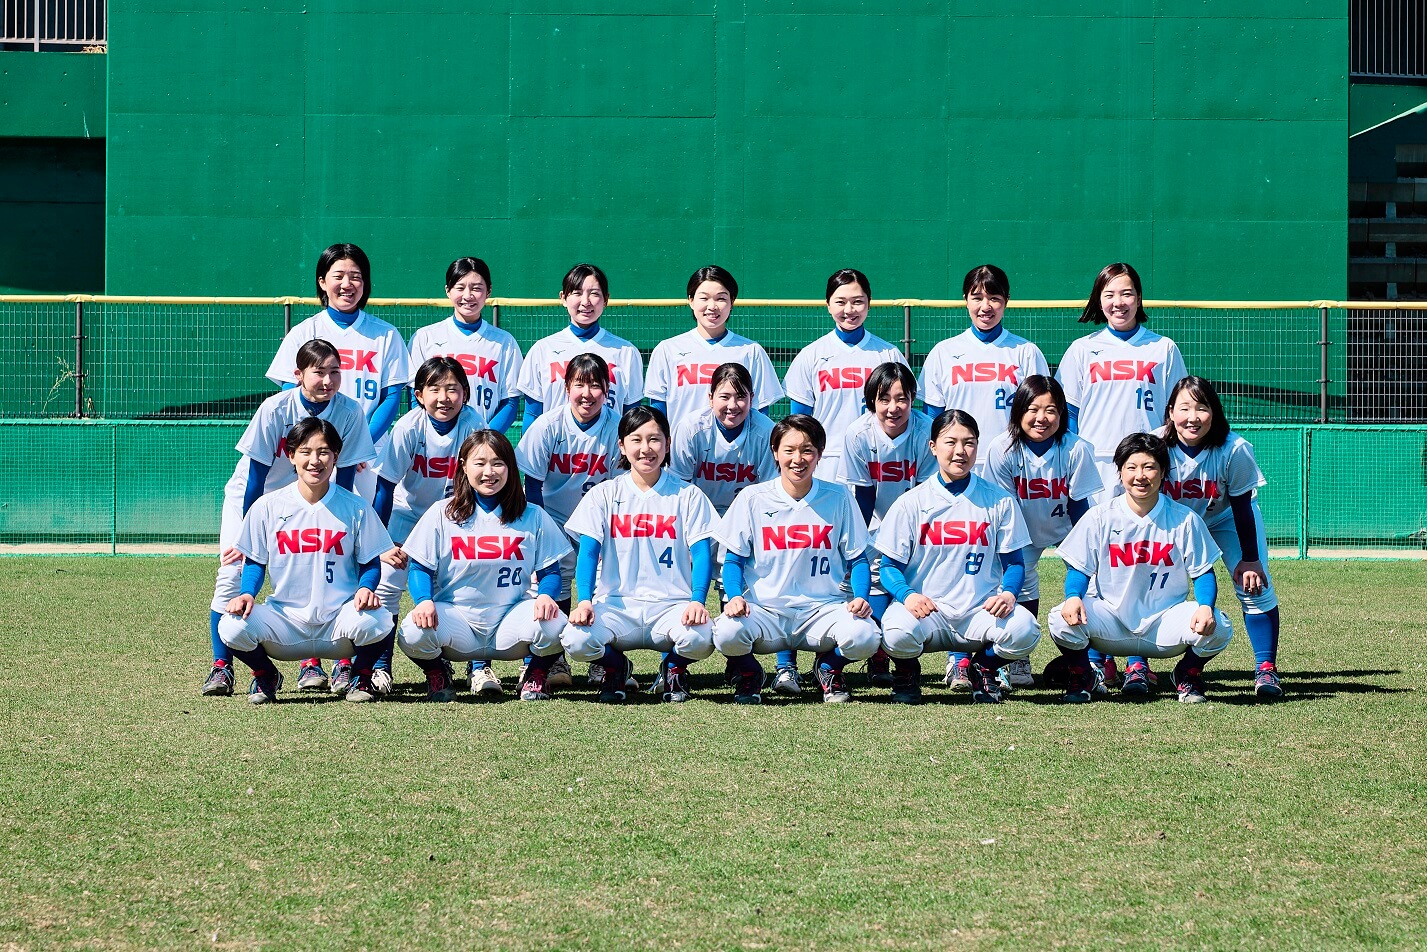 国内最高峰のJDリーグで戦う女子ソフトボールチーム日本精工女子ソフトボール部 ブレイブベアリーズのサムネイル画像